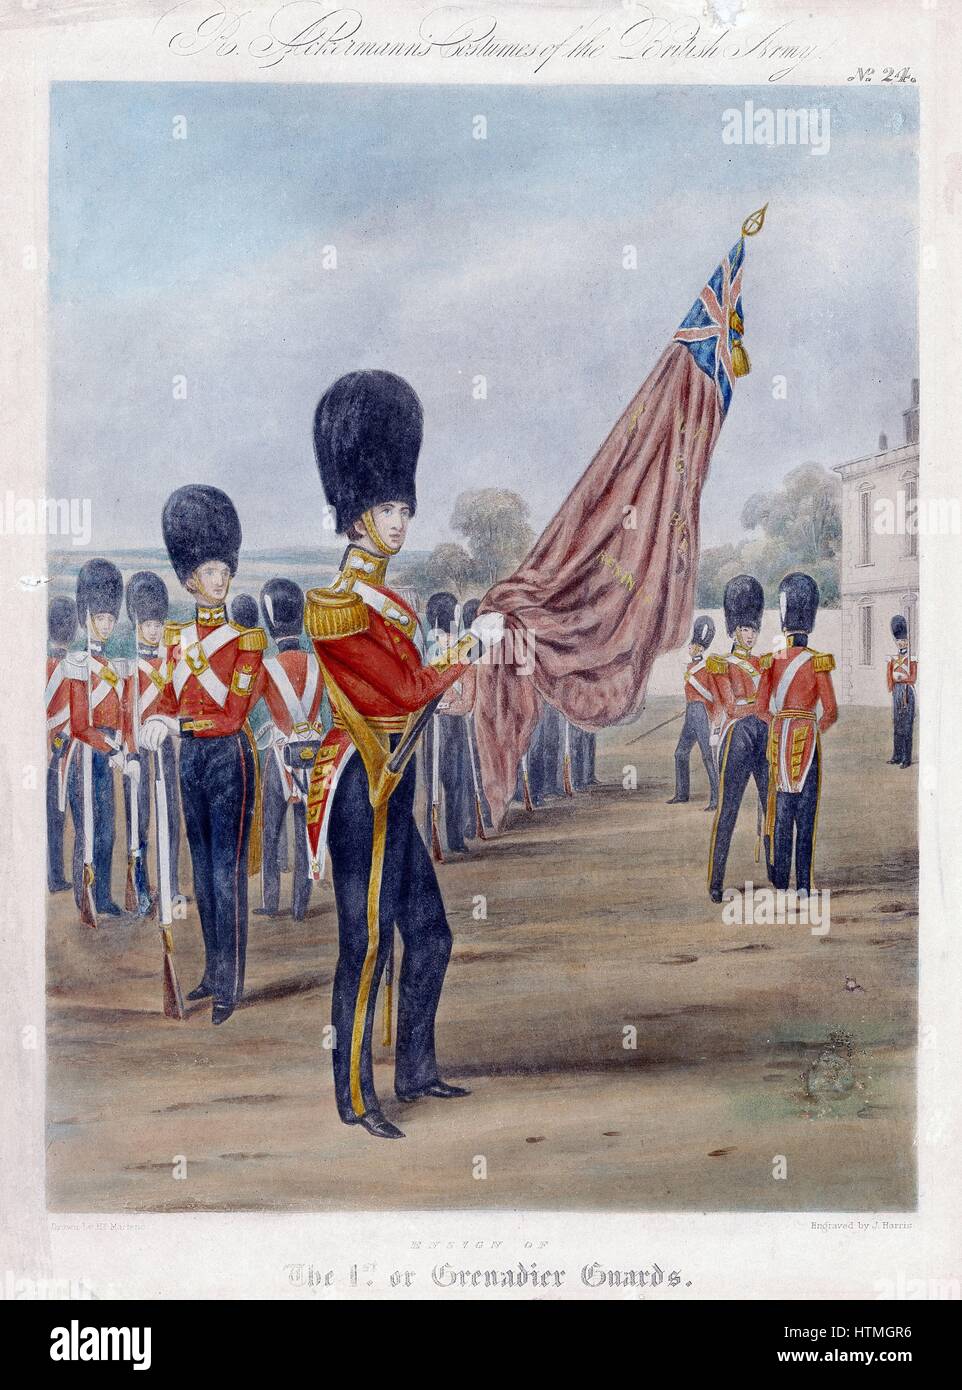 Fähnrich der Grenadier Guards. Beachten Sie "Granaten" auf Kragen und Gürtel. Von R. Ackermann "Kostüme der britischen Armee" 1844. Lithographie Stockfoto